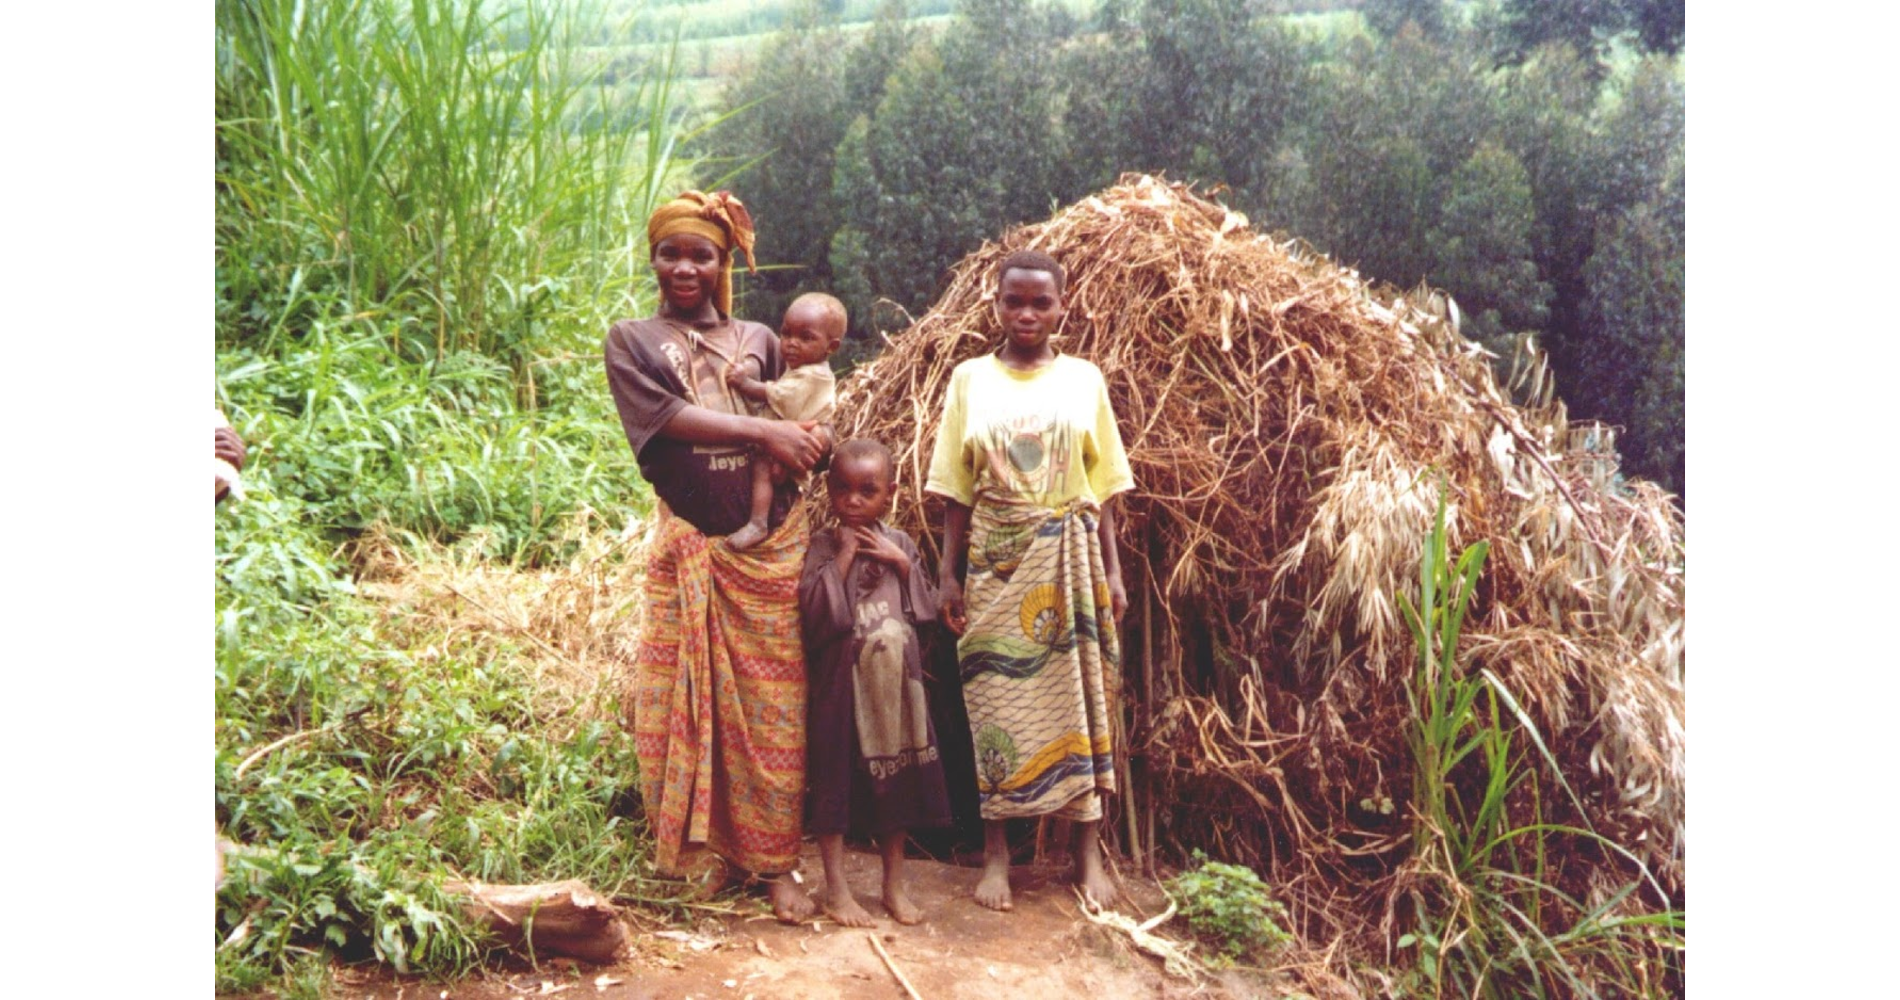 Indigenous peoples in Rwanda